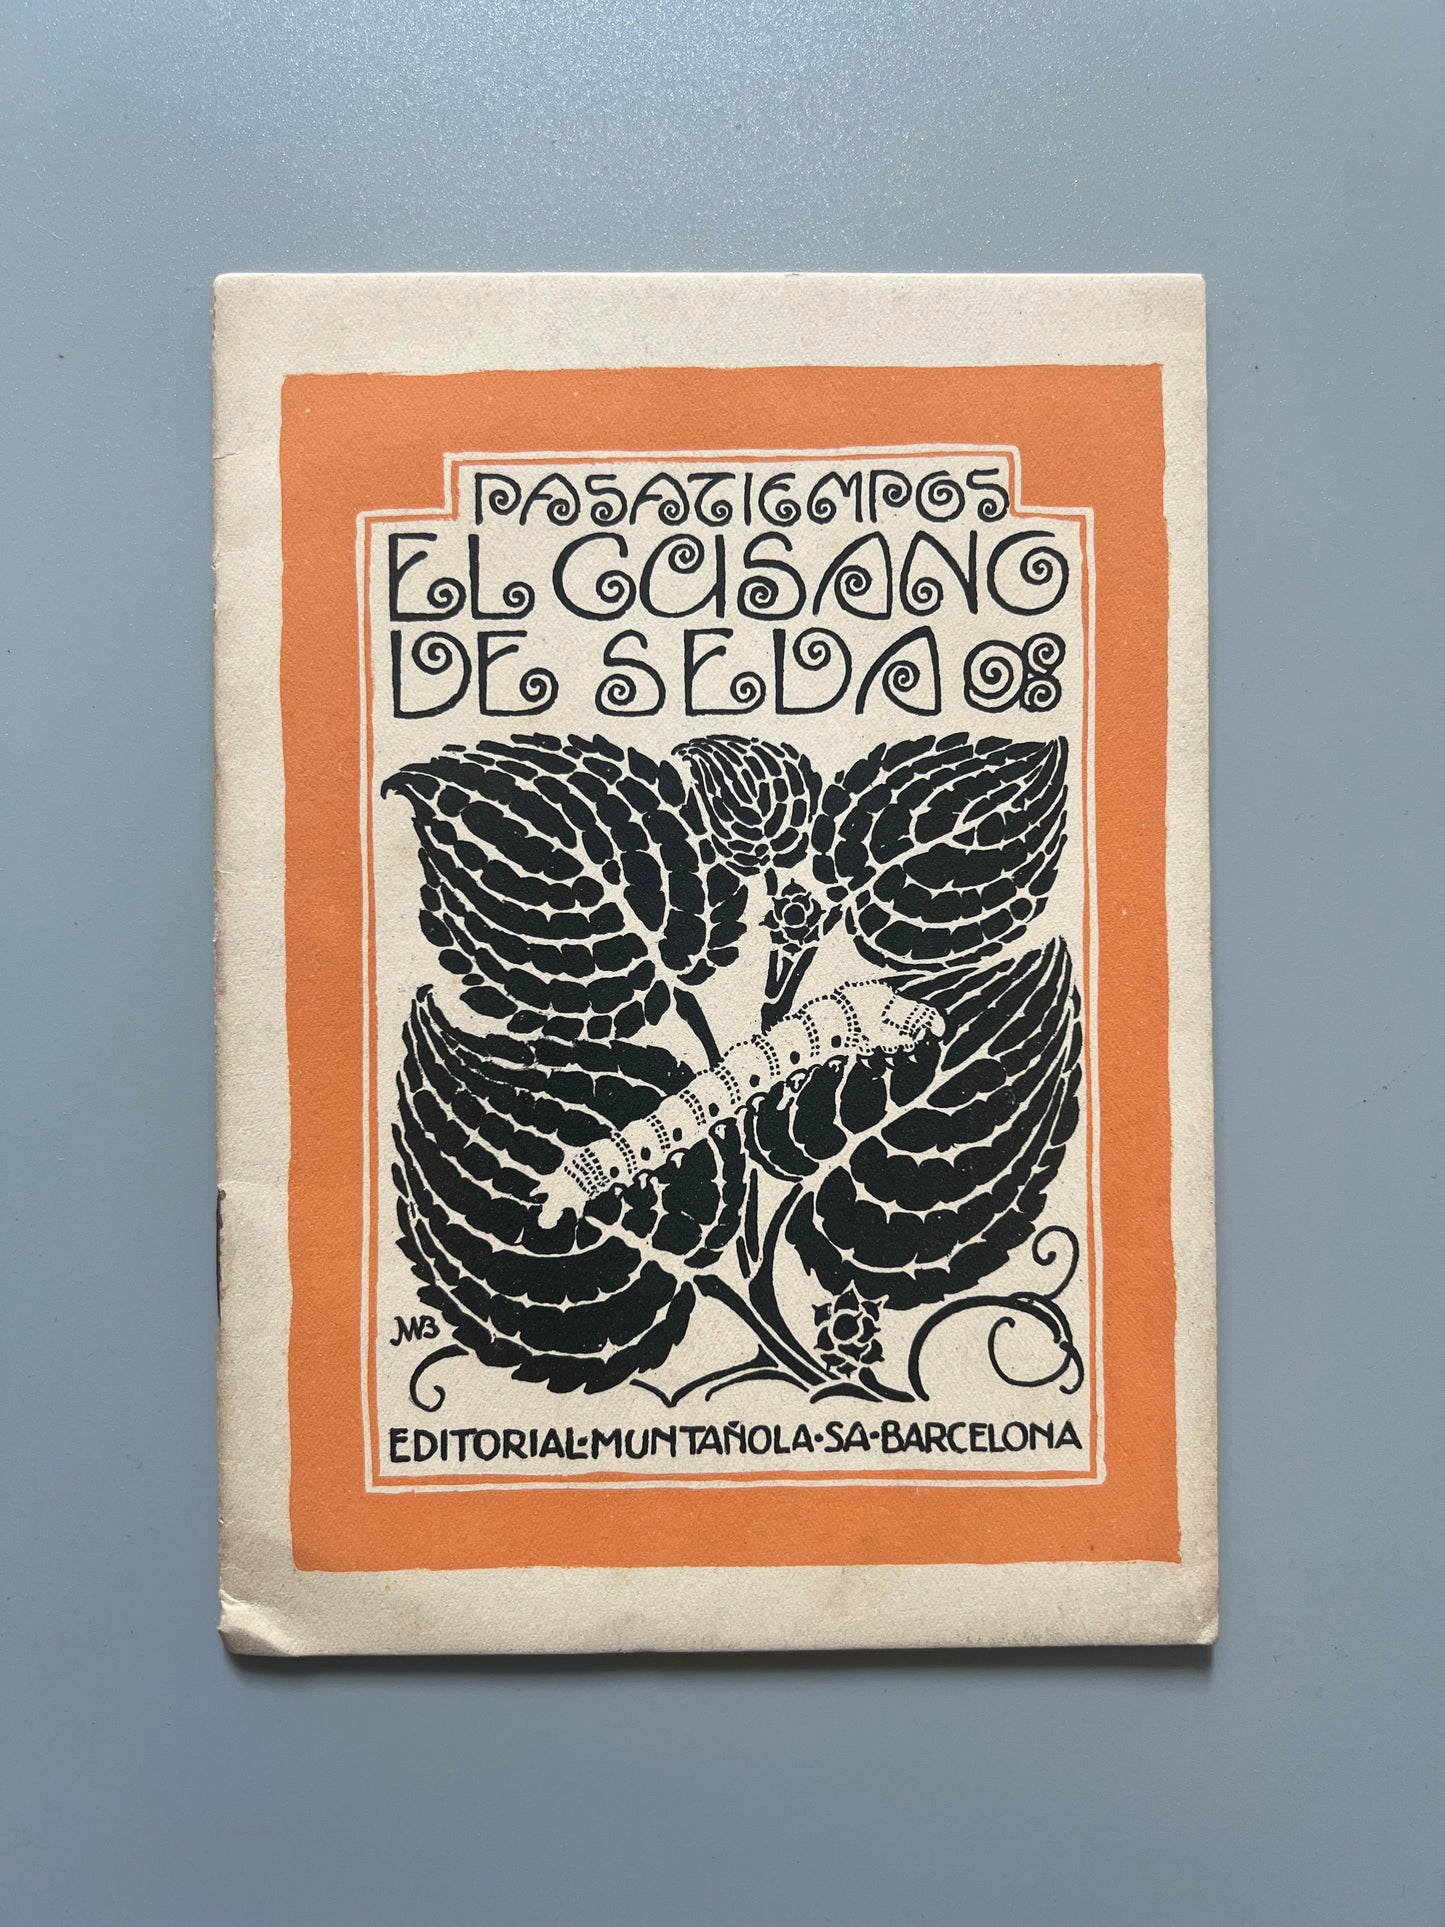 El gusano de seda. Pasatiempos - Editorial Muntañola, ca. 1930